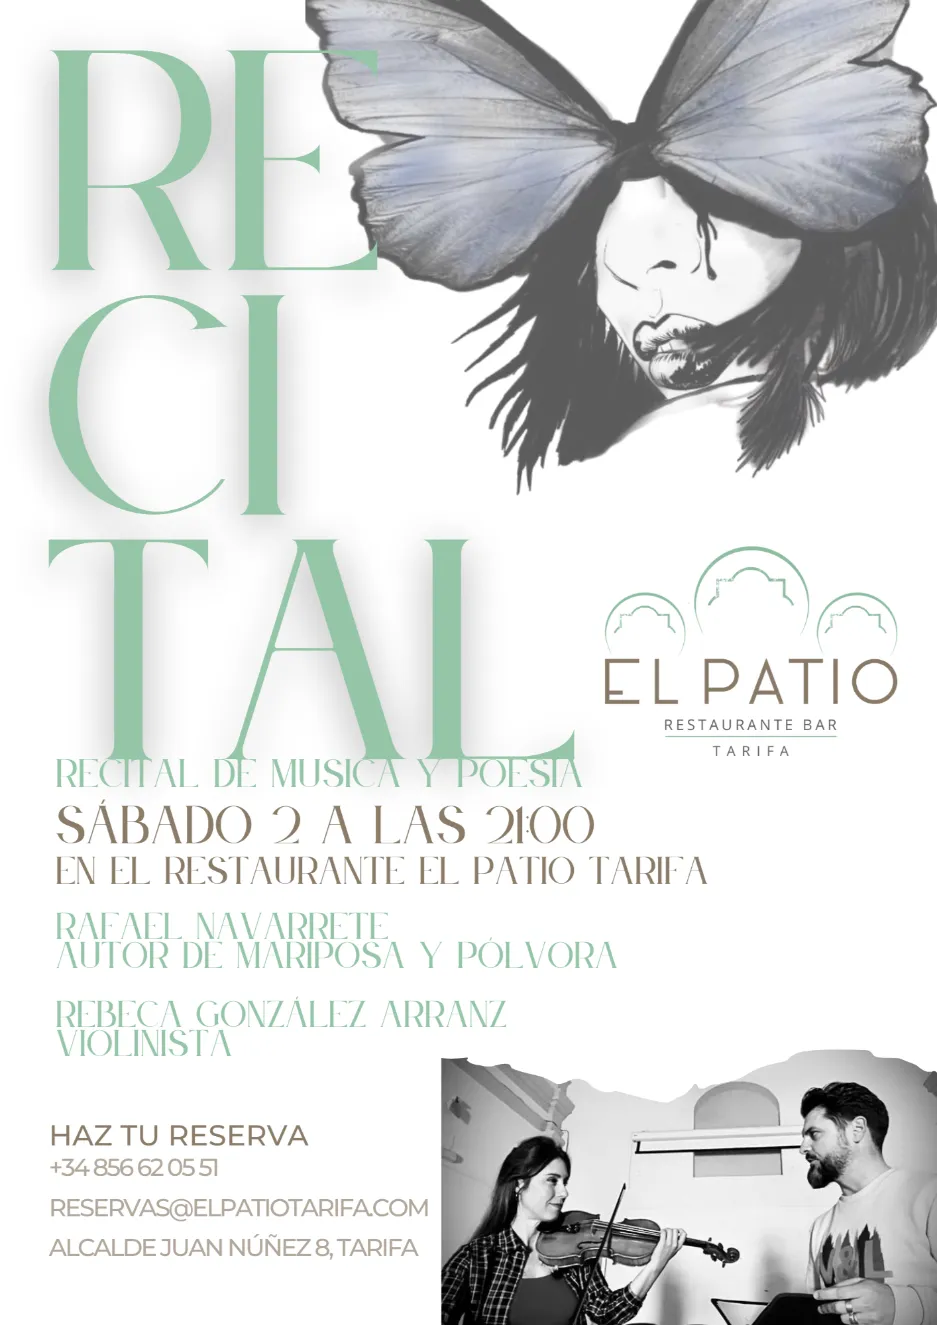 Recital de poesía y música en Restaurante El Patio, Tarifa.